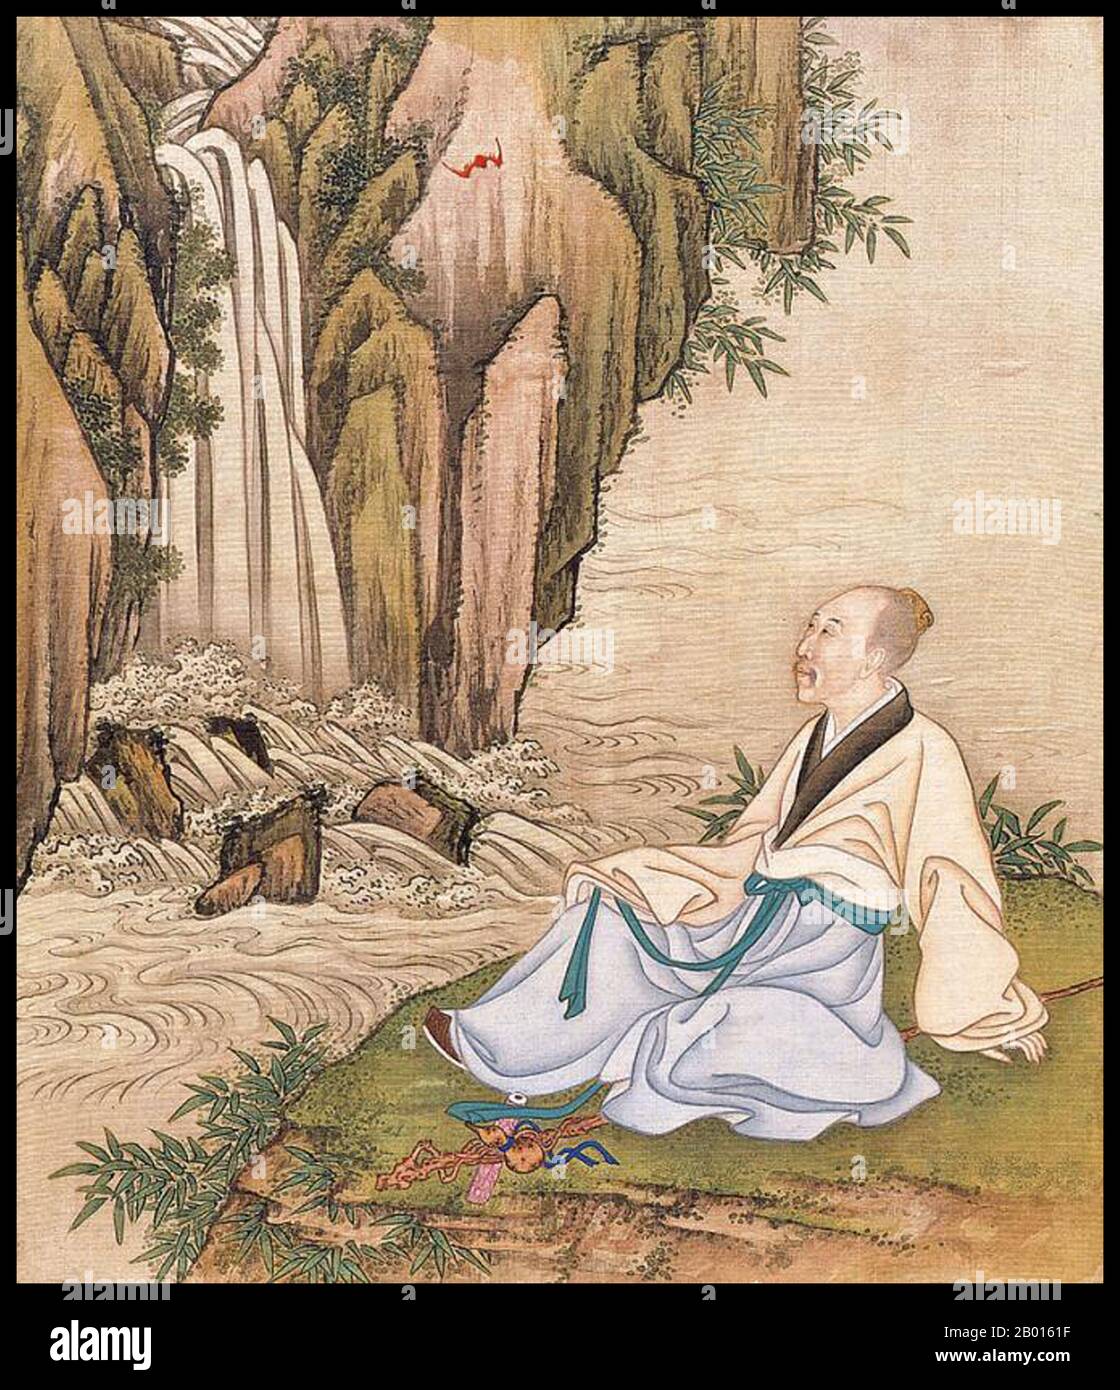 Cina: Imperatore Yongzheng (13 dicembre 1678 – 8 ottobre 1735), 5° governatore della dinastia Qing (r. 1722-1735), rilassante a cascata. Album foglia pittura, c.. 1723-1735. L'imperatore Yongzheng, nato Yinzhen e il nome del tempio Shizong, era il quinto imperatore della dinastia Qing. Un righello duro-funzionante, l'obiettivo principale di Yongzheng era quello di creare un governo efficace a spese minime. Come suo padre, l'imperatore Kangxi, Yongzheng usò la forza militare per preservare la posizione della dinastia. Sospettato dagli storici di aver usurpato il trono, il suo regno fu spesso chiamato dispotico, efficiente e vigoroso. Foto Stock